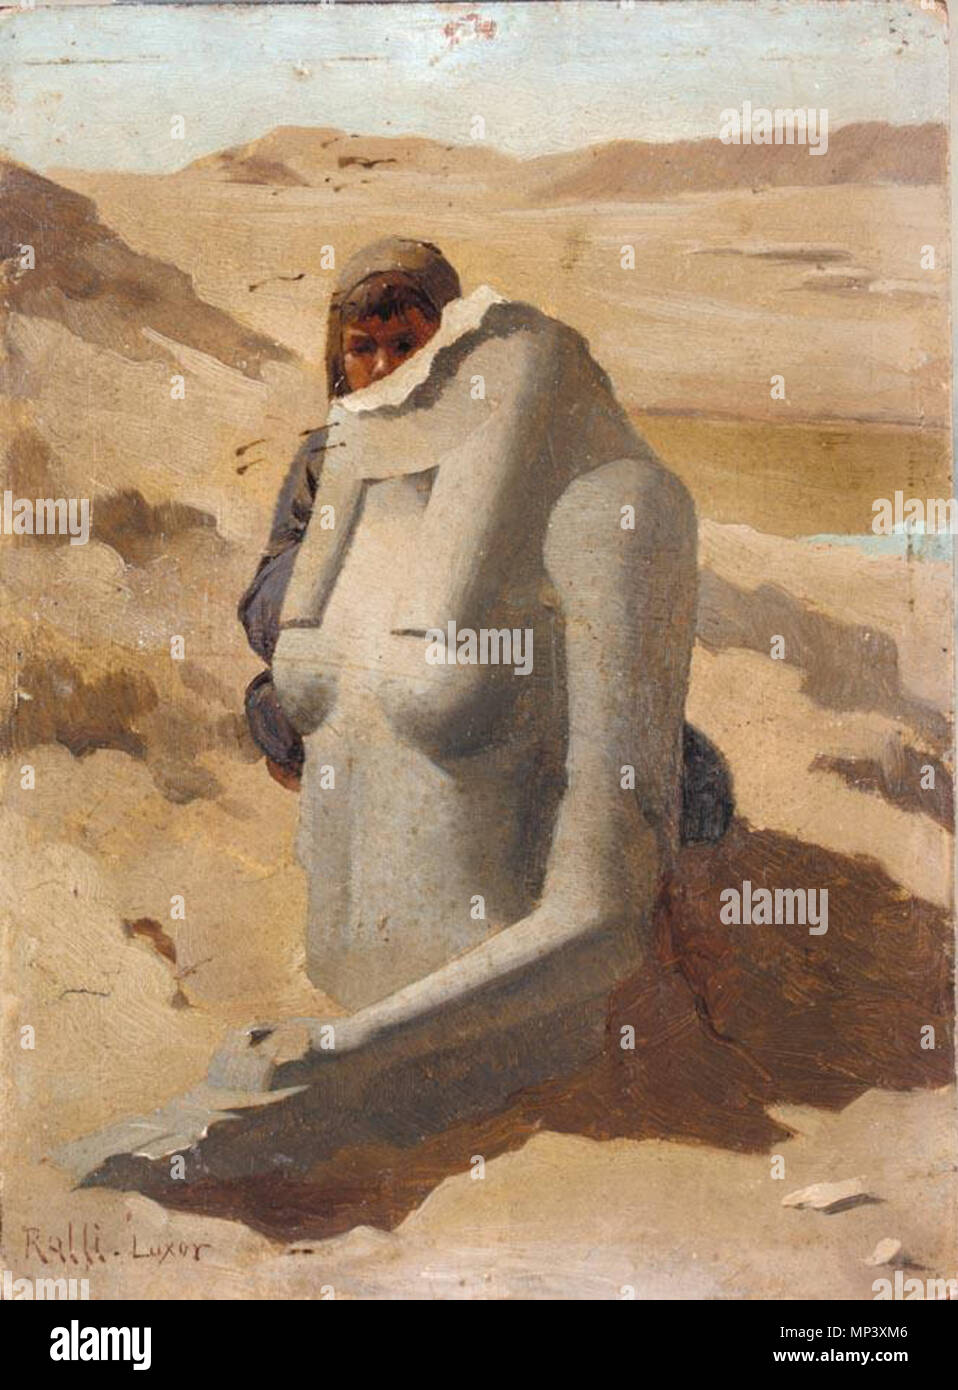 Se cacher derrière l'enfant, sculpture égyptienne Luxor . Φωτογραφία πίνακα κρύβεται Παιδί του πίσω αιγυπτιακό άγαλμα Λούξορ από,. Λάδι ξύλο Λοιπά : σε, 22 x 16 cm². Ιδιωτική συλλογή. . Άγνωστη αναγράφεται στον πίνακα (δεν). Ράλλης Θεόδωρος (1852-1909) 1186 Theodoros Rallis - enfant de se cacher derrière la sculpture égyptienne, Luxor Banque D'Images